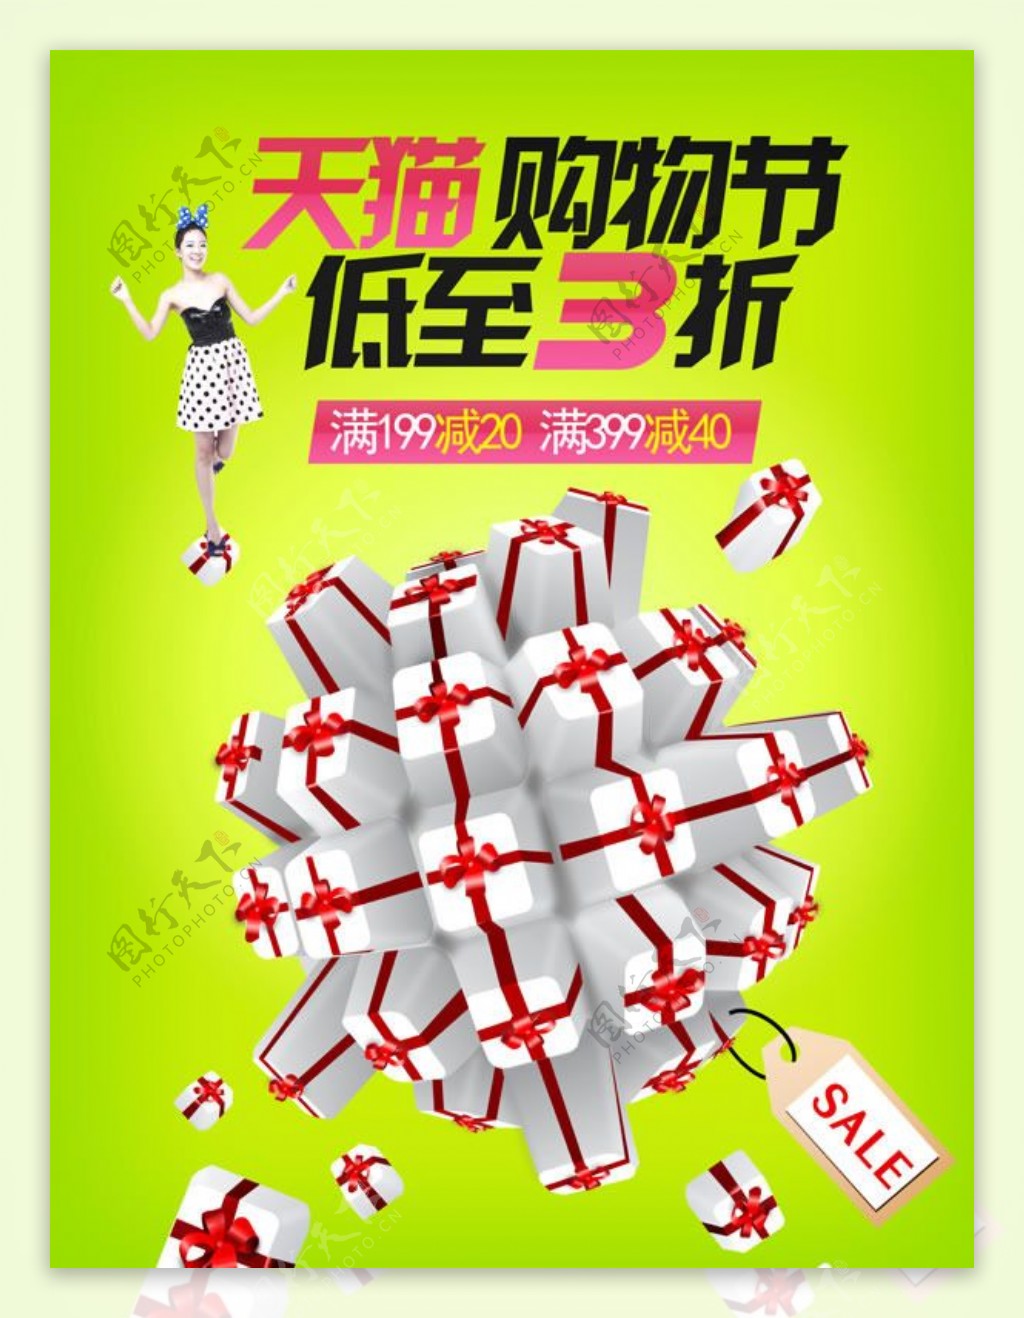 天猫购物节促销海报